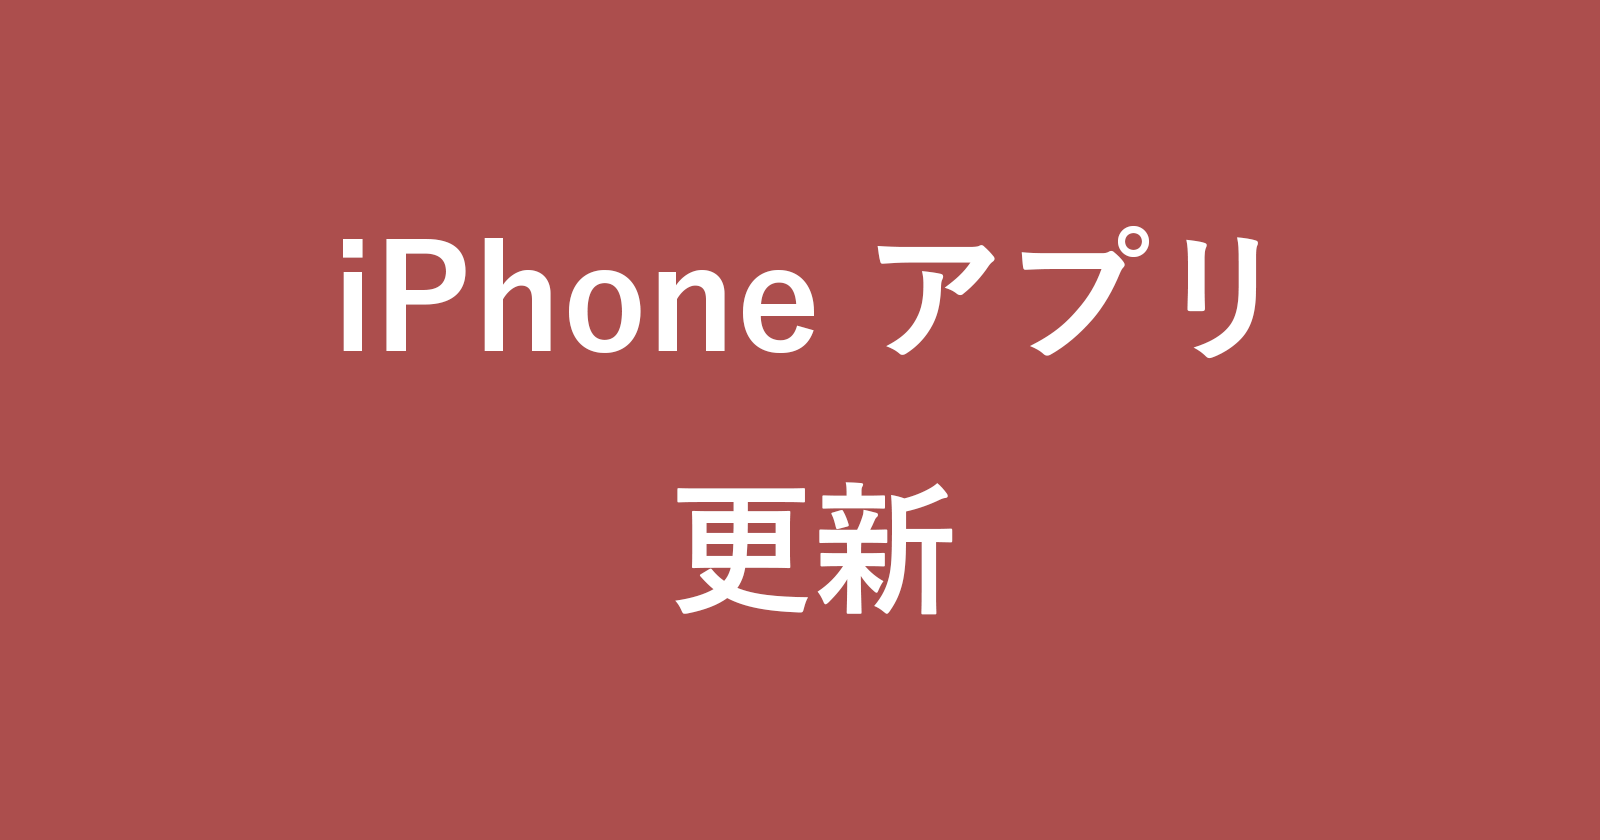 iphone app bg update